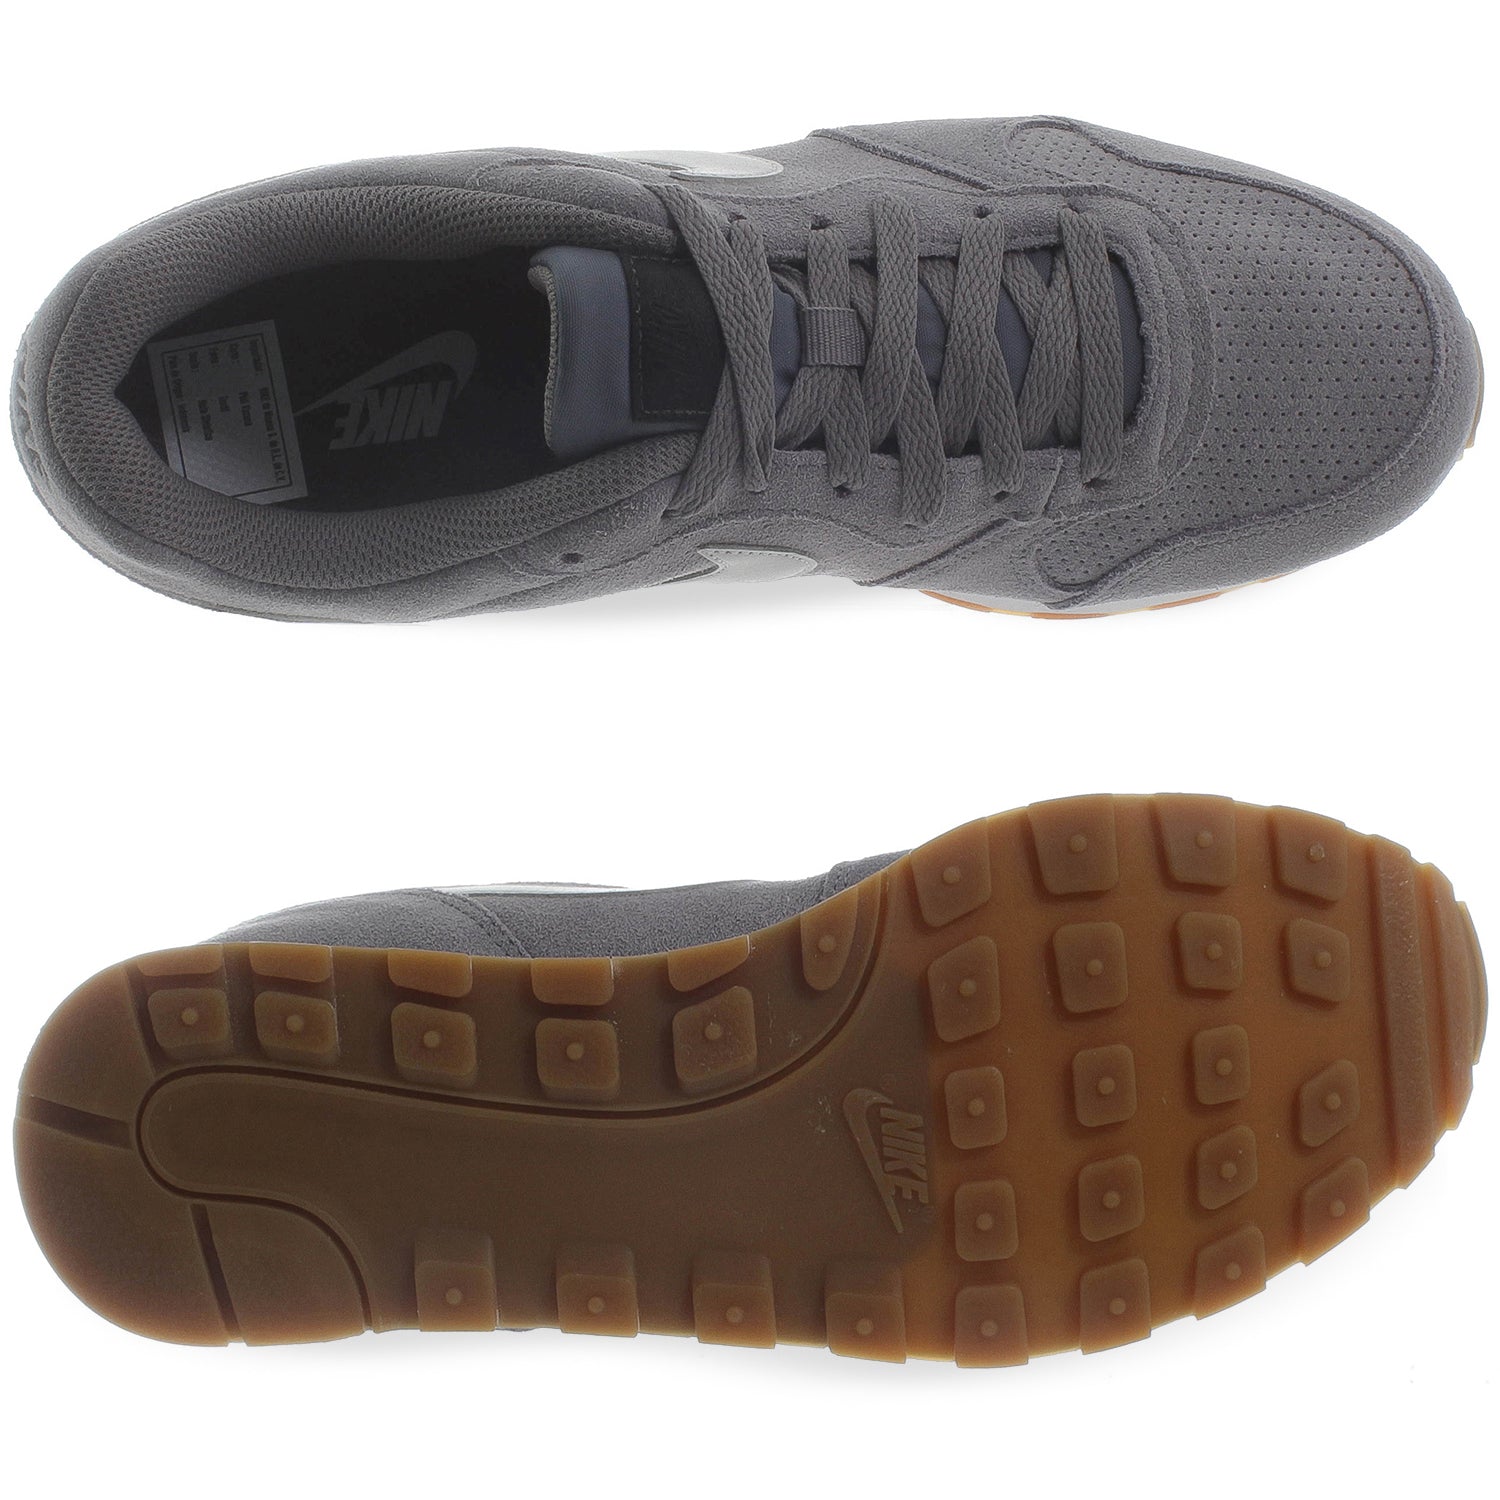 Tenis Nike MD Runner 2 Suede - AQ9211002 - Gris - Hombre | Shoelander.com - Footwear